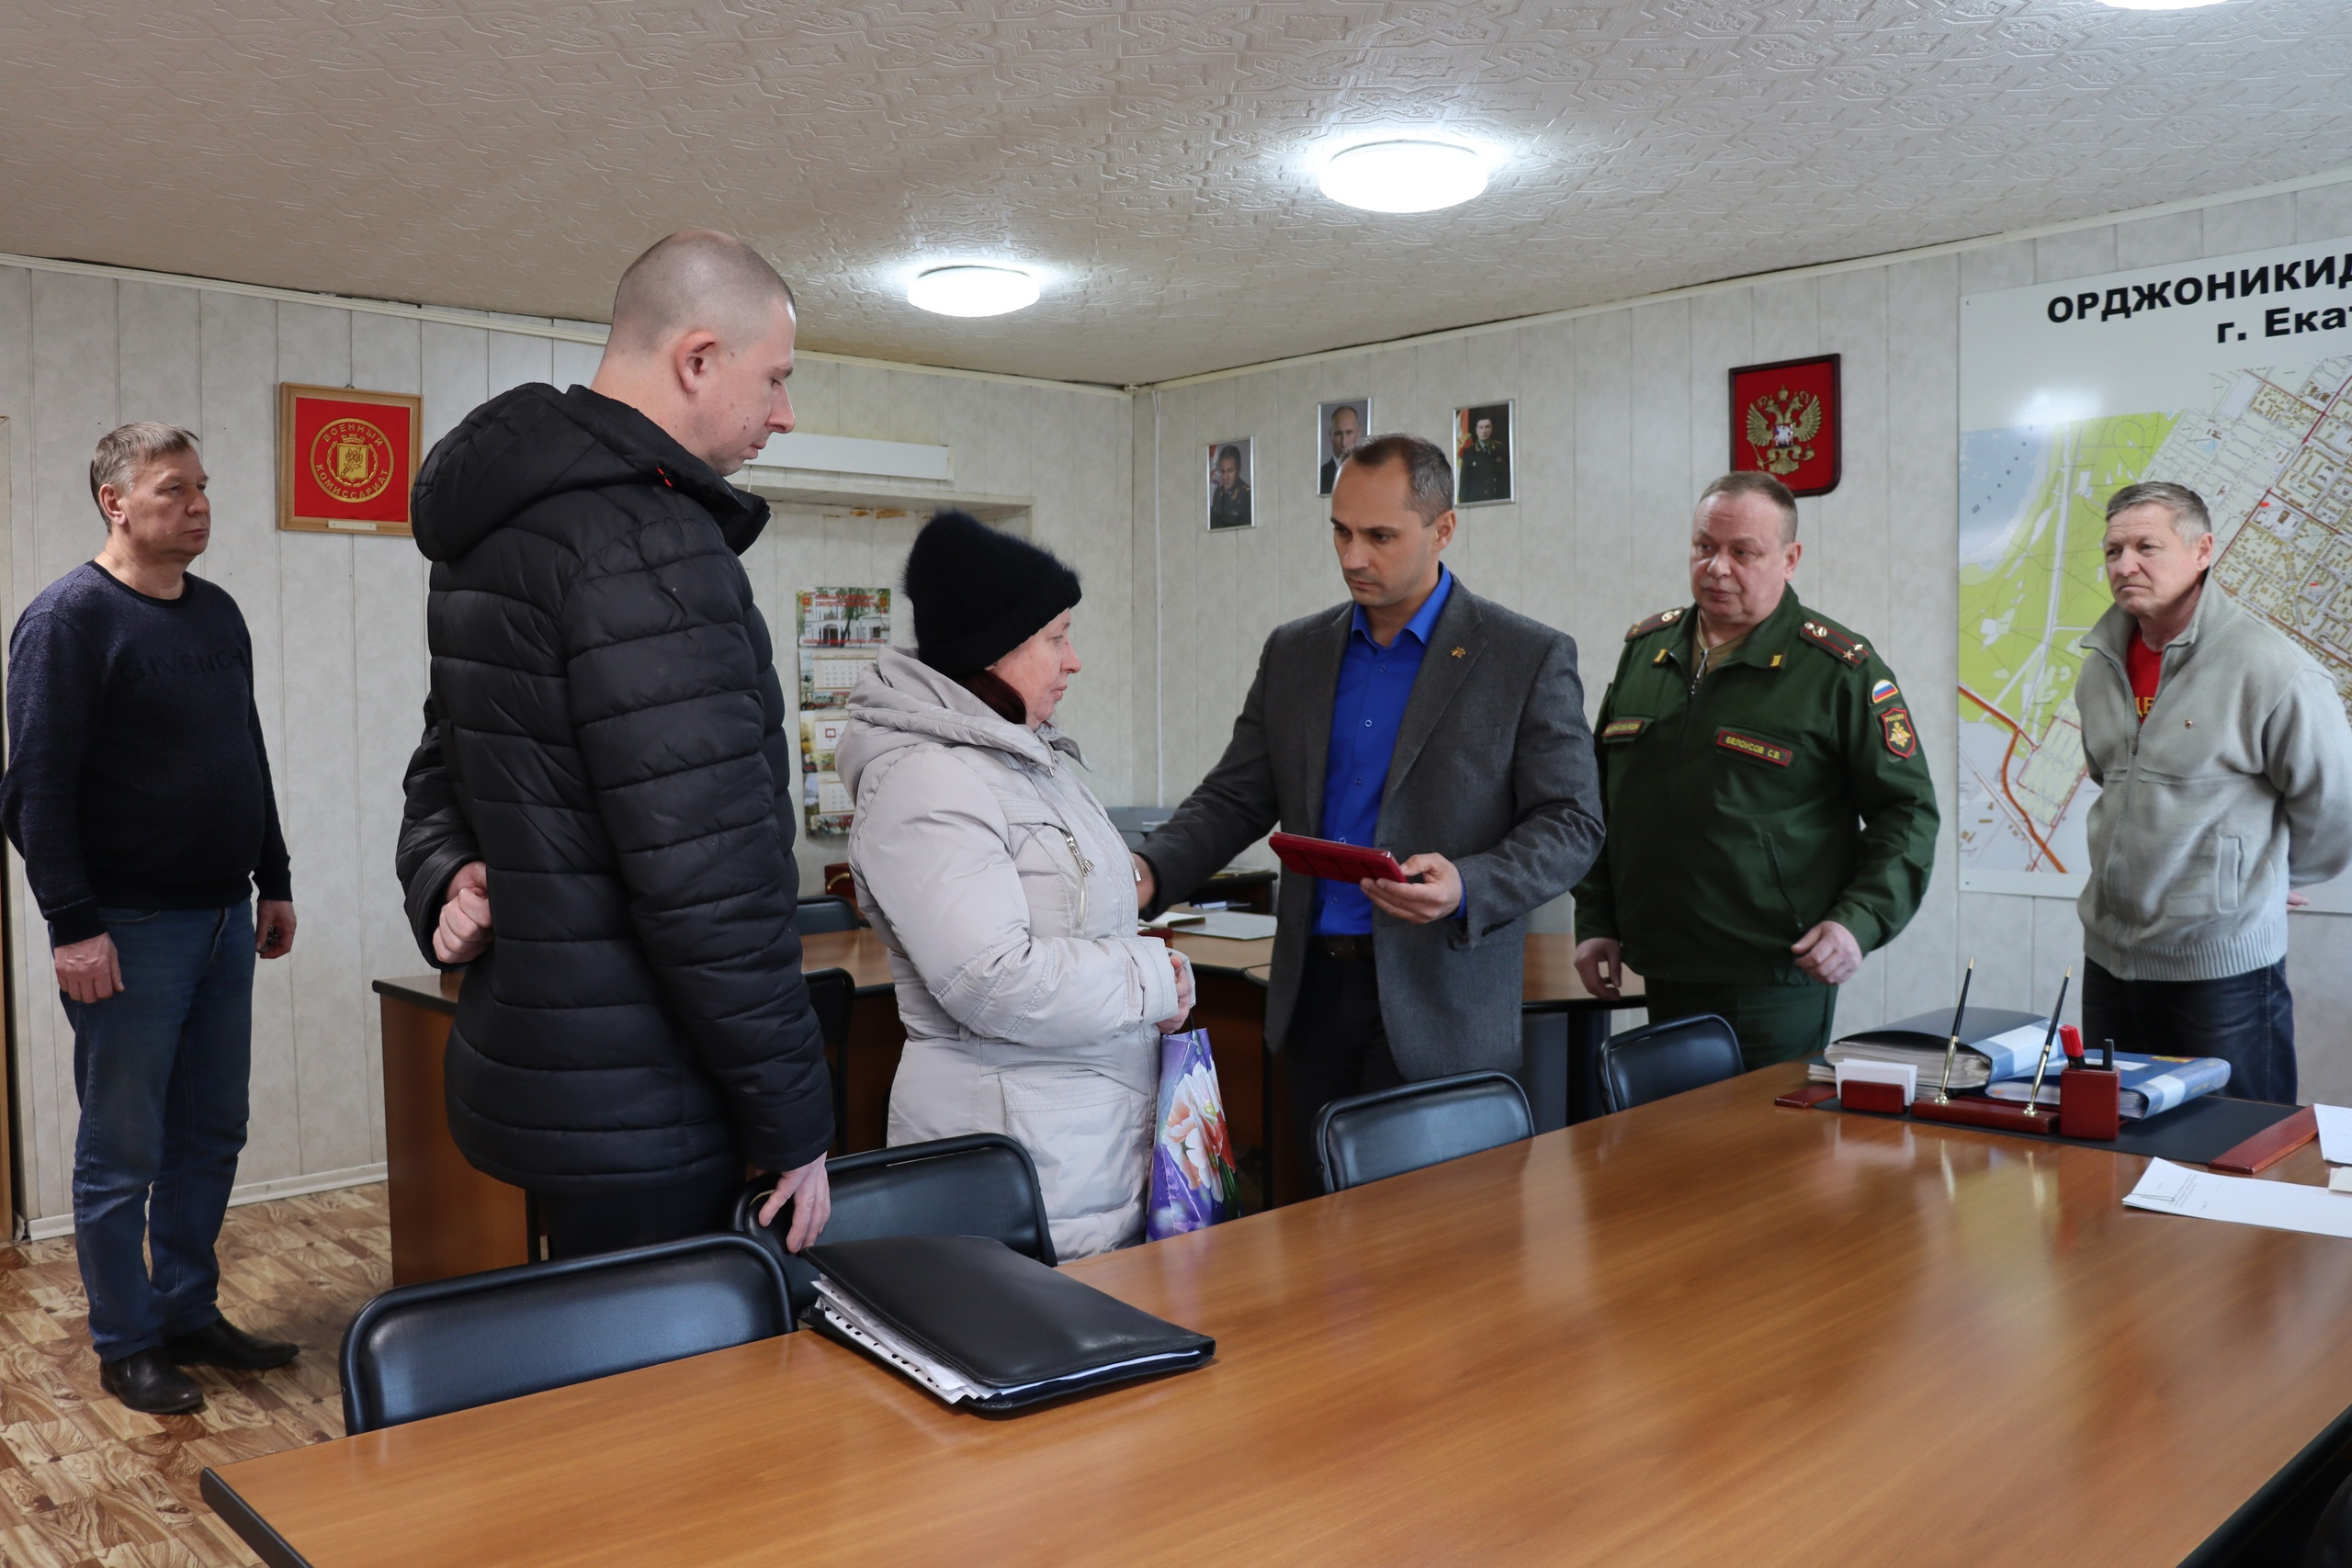 Владимир Путин посмертно наградил орденом Мужества ефрейтора из Екатеринбурга